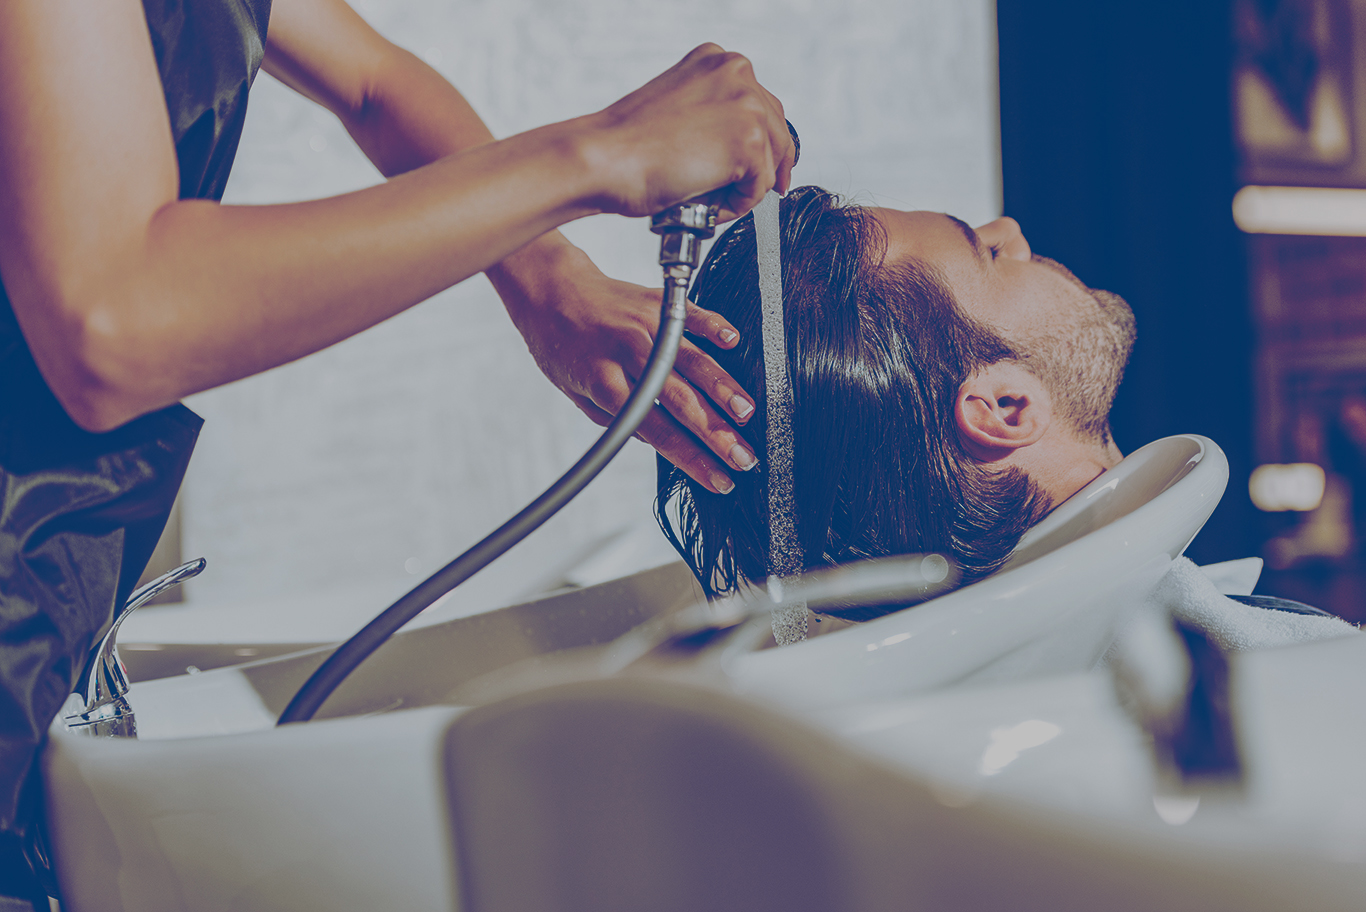 Hairdresser washing client’s hair in salon